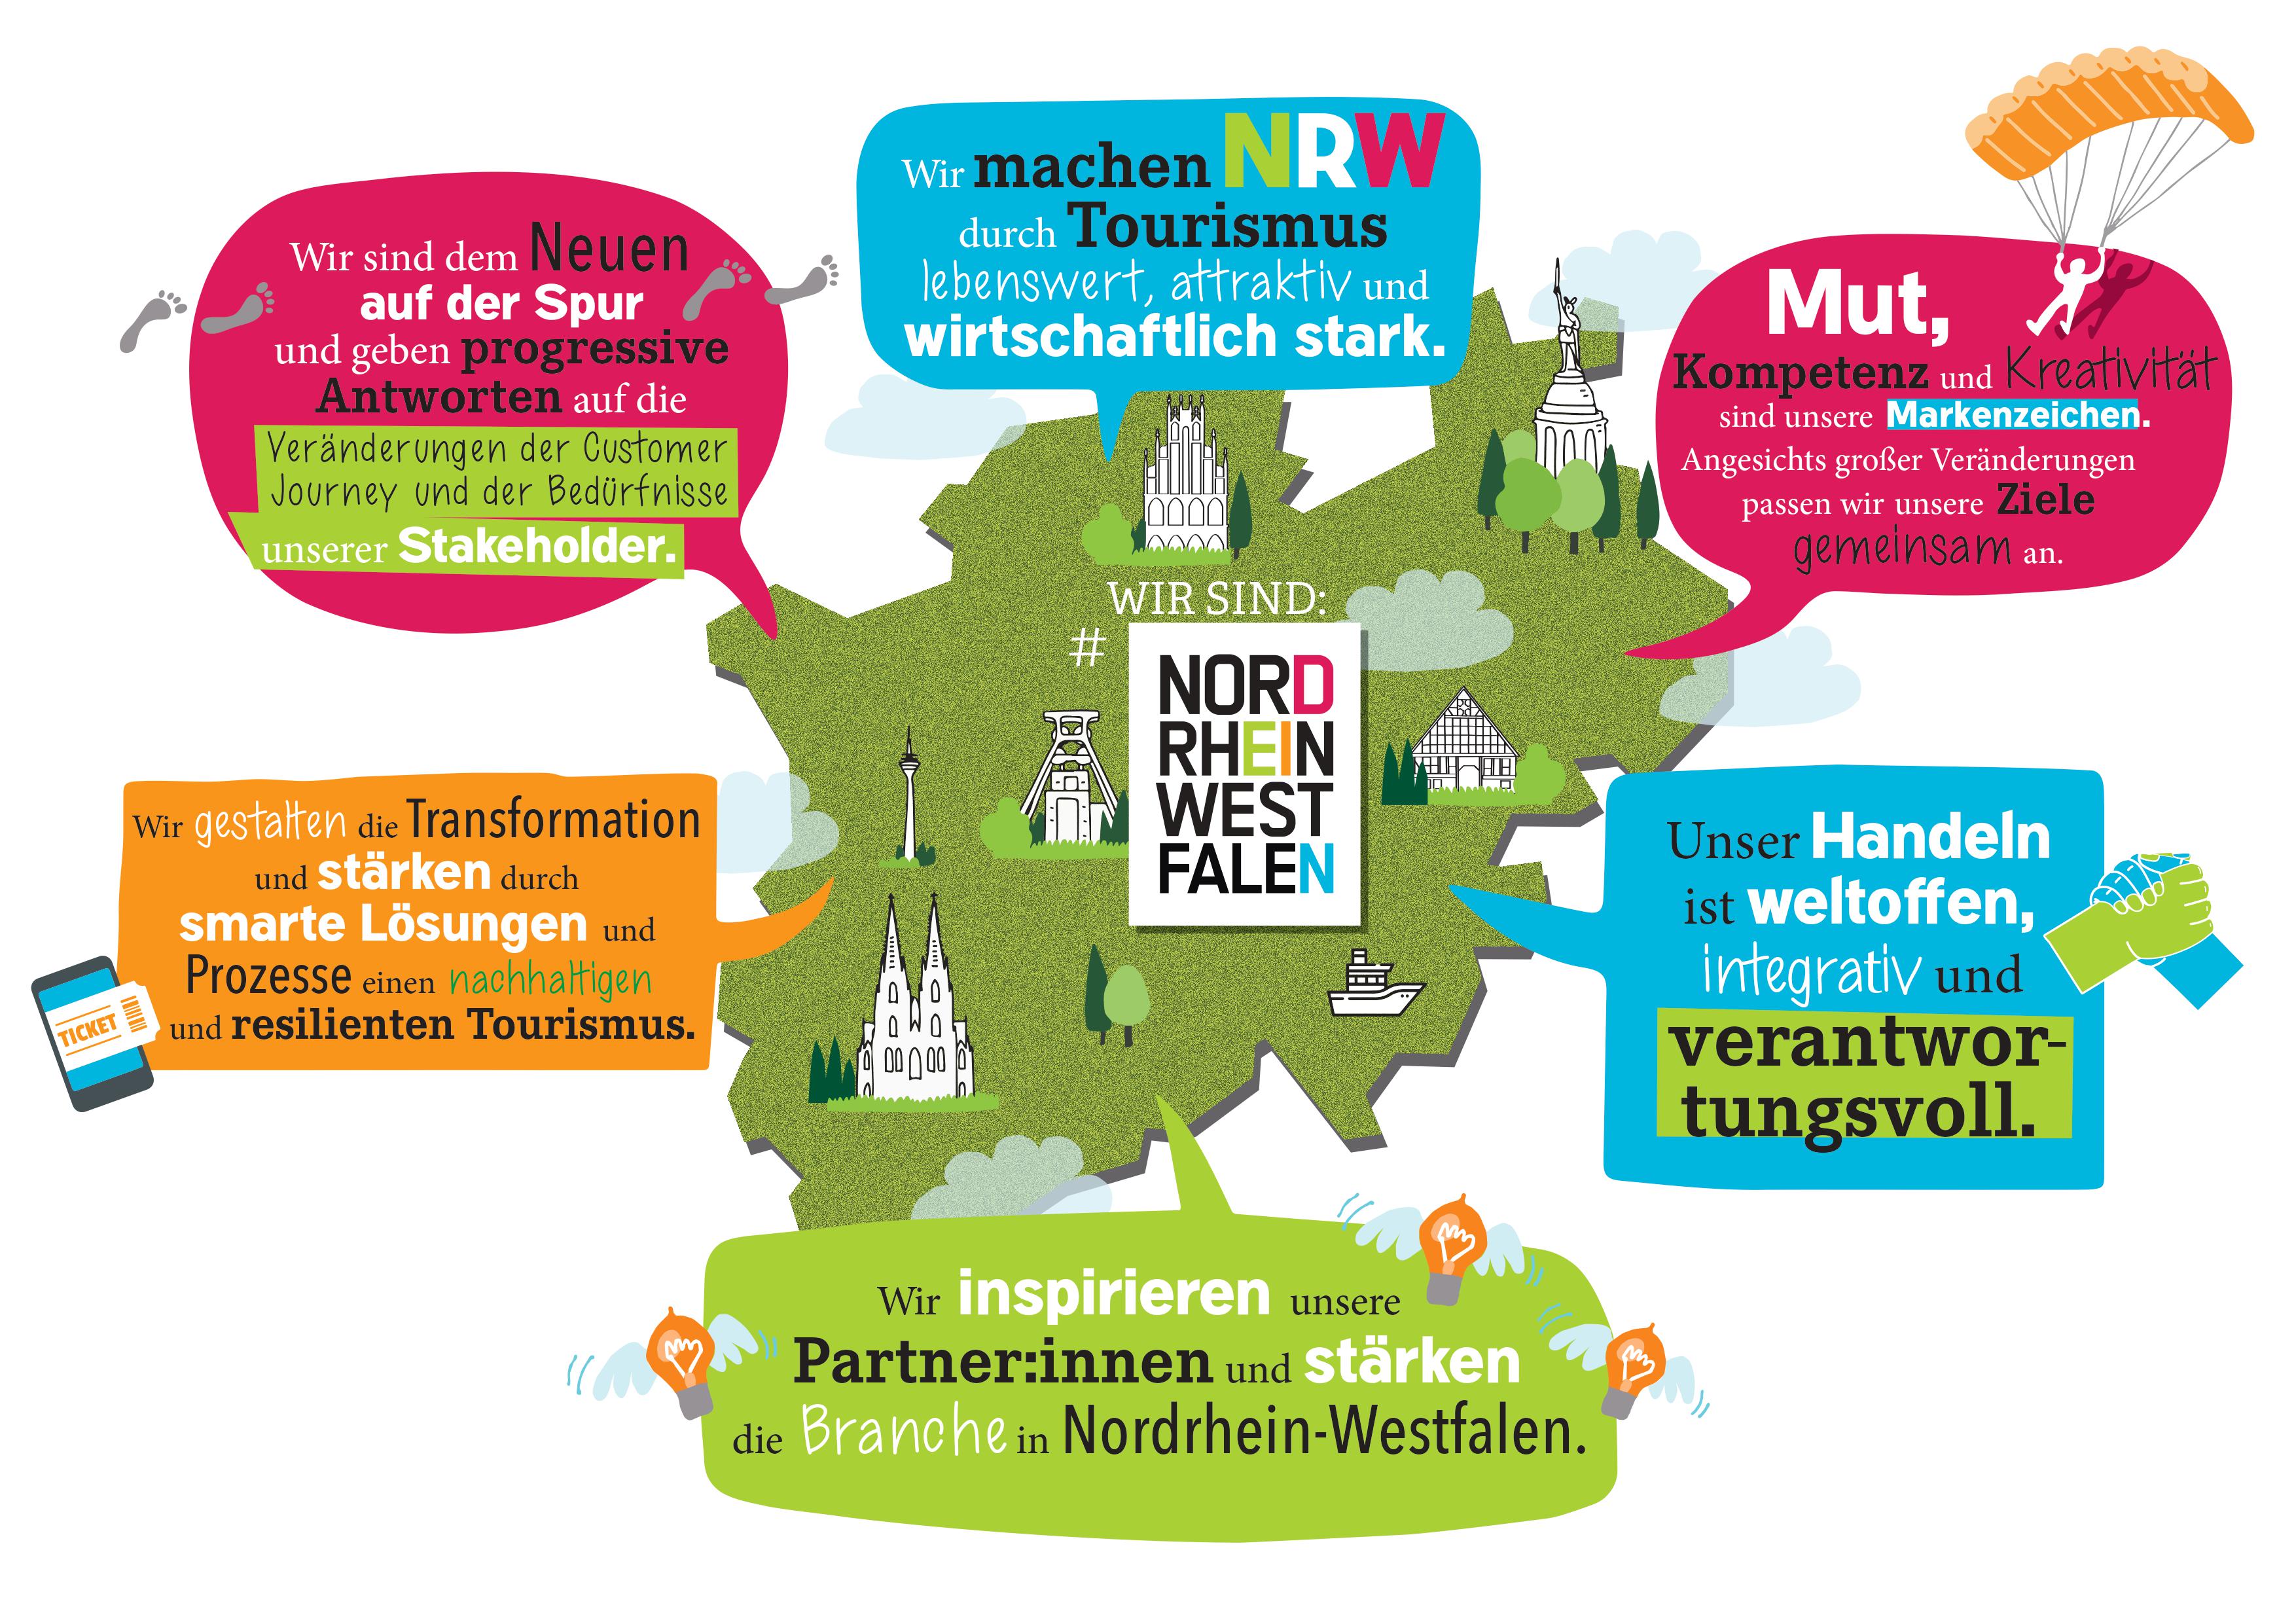 Landkarte von NRW und Leitsätze, die beschreiben, wie der Verband arbeitet